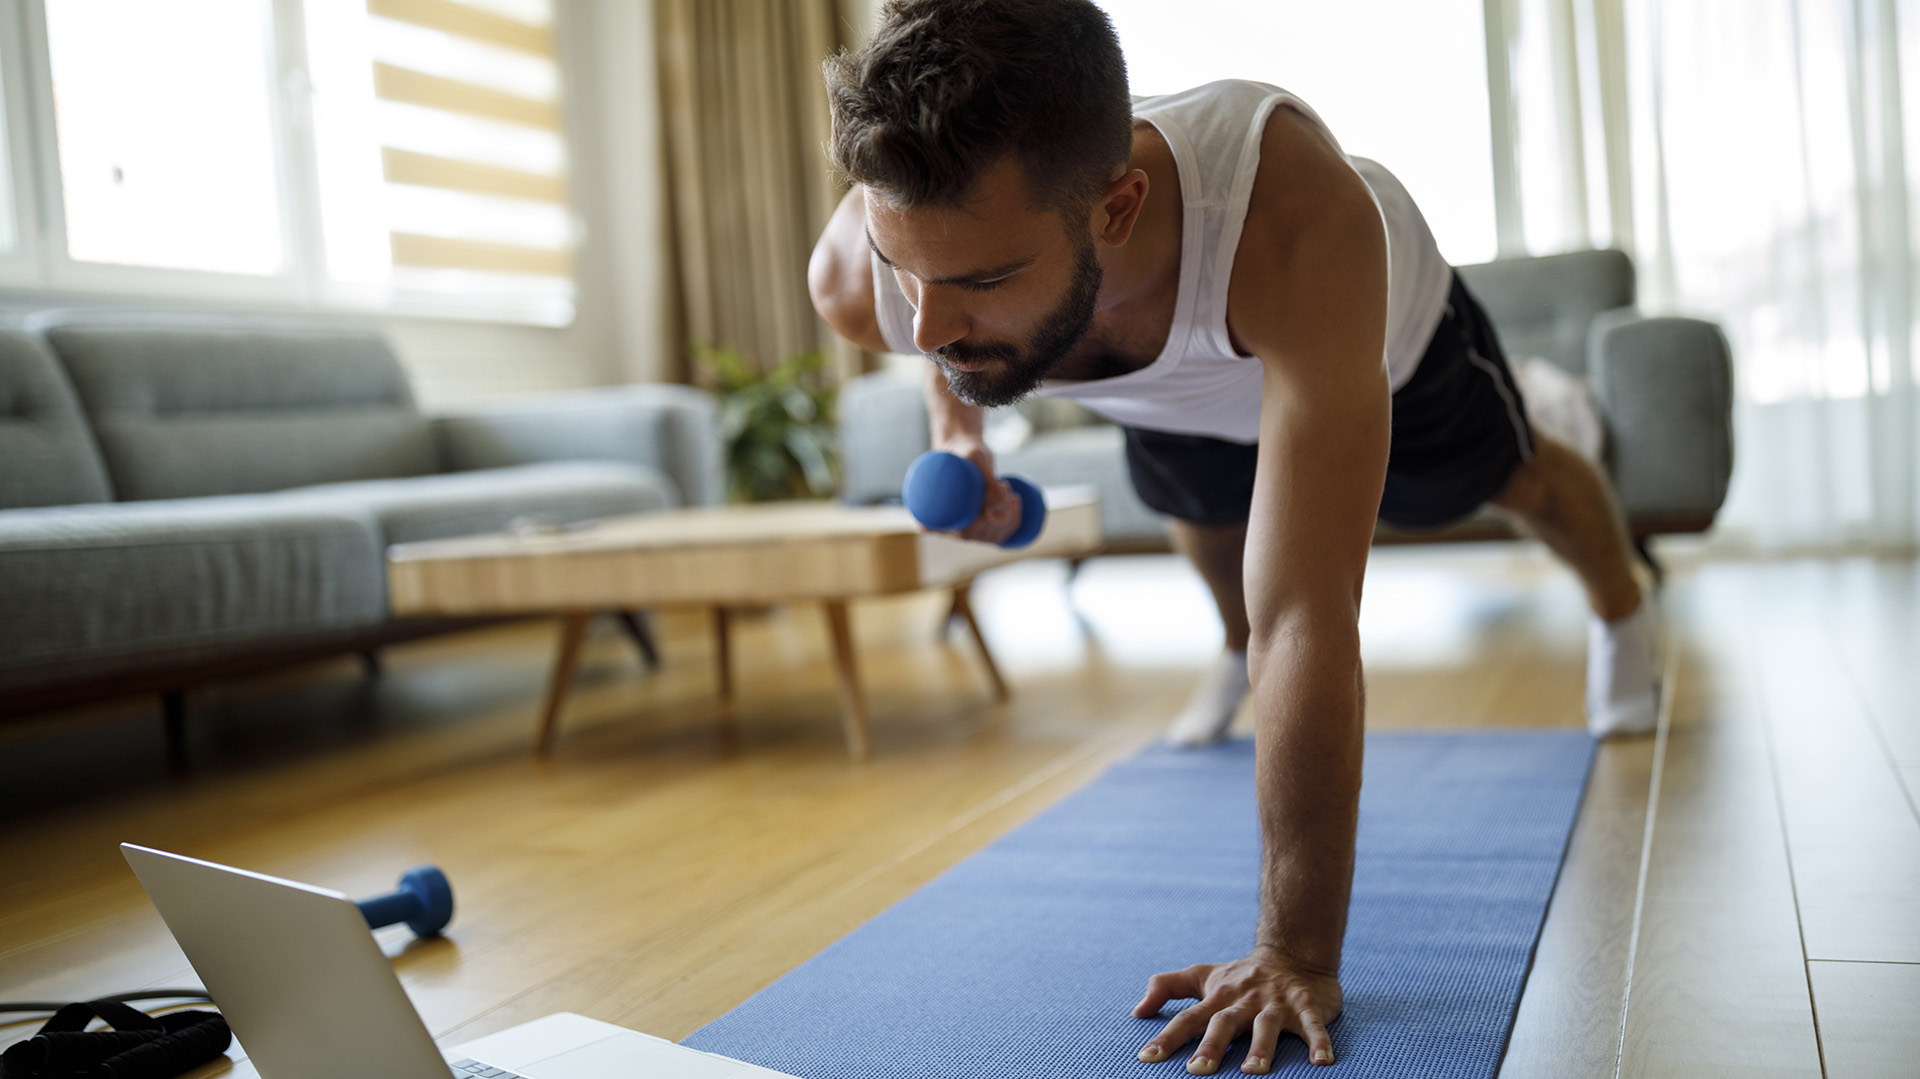 El ejercicio nocturno es ideal para los hombres interesados ​​en mejorar la salud cardíaca y metabólica, así como el bienestar emocional, tal como observaron en el estudio (Getty)